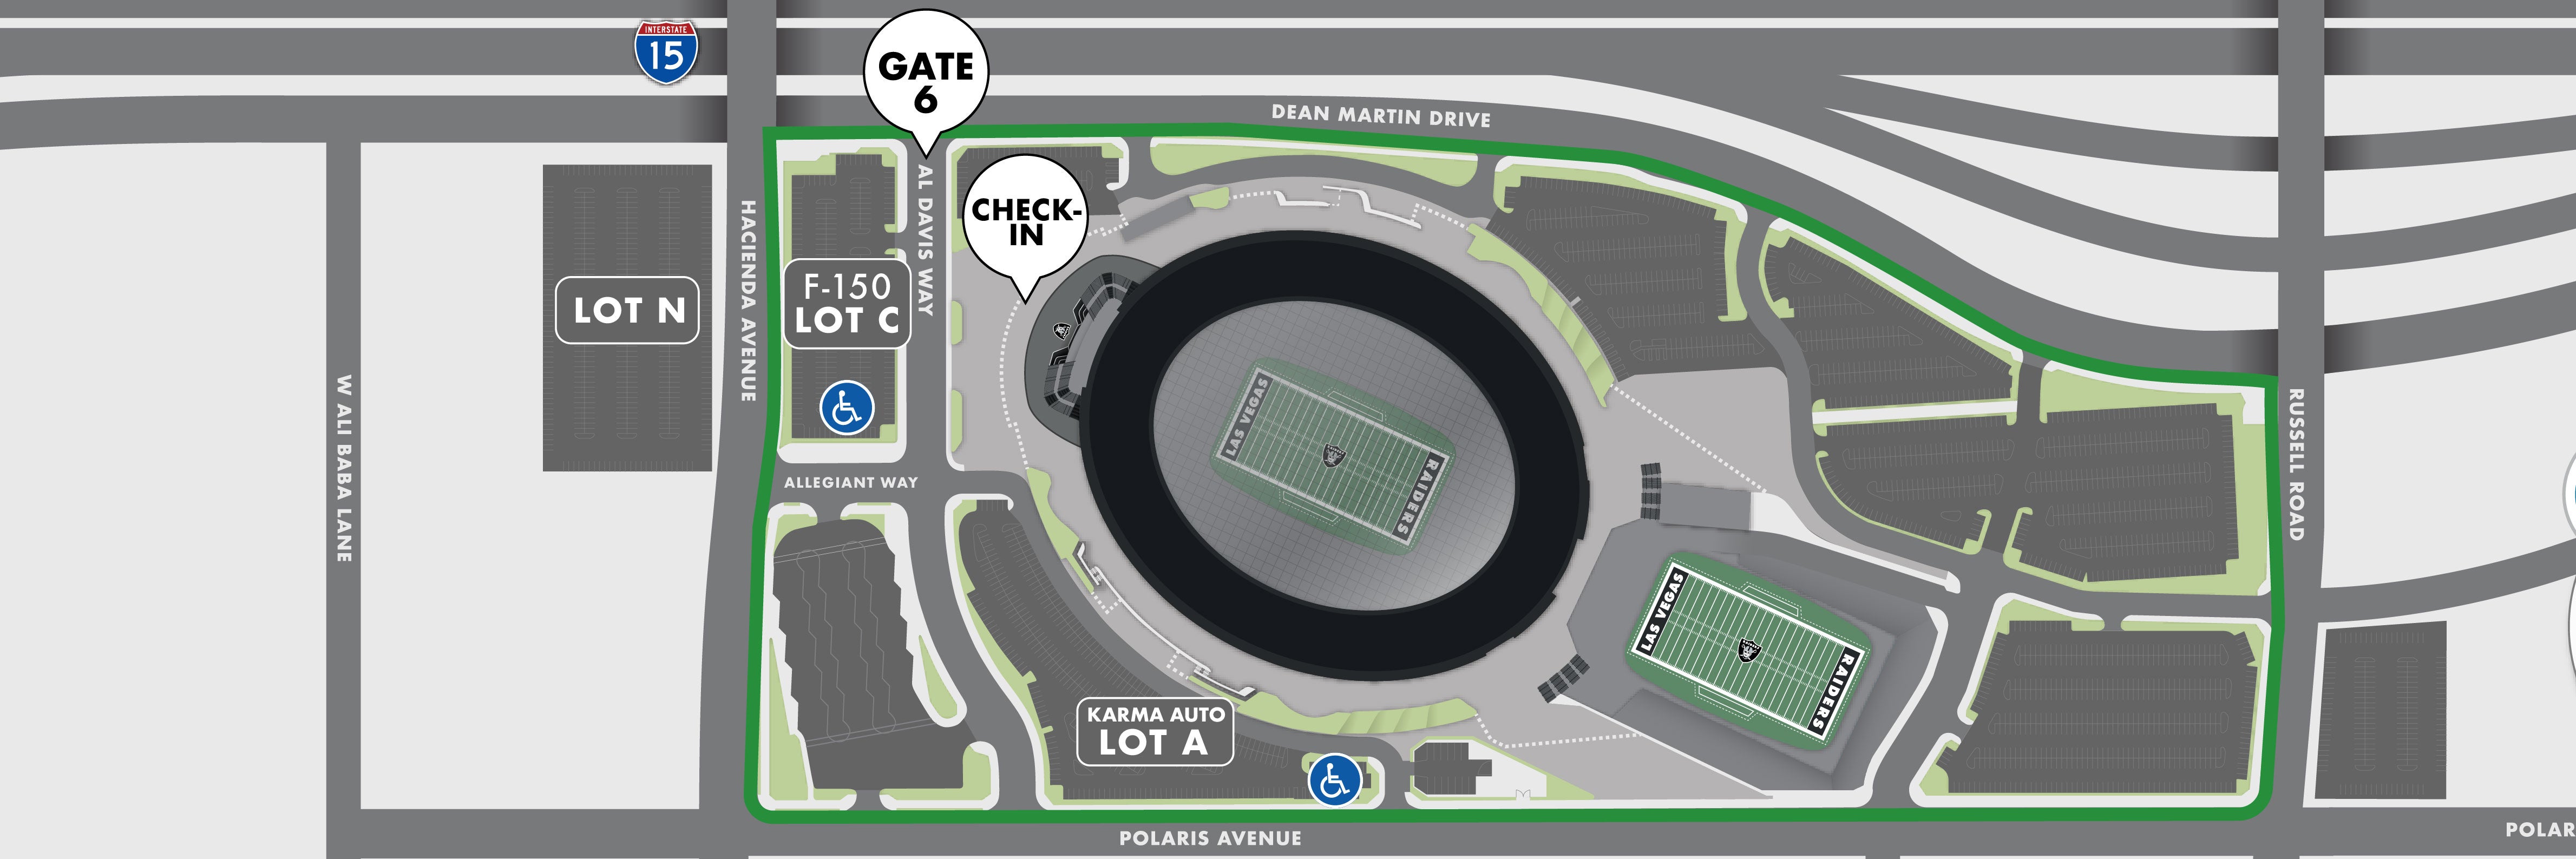 Allegiant Stadium Tours Parking Map